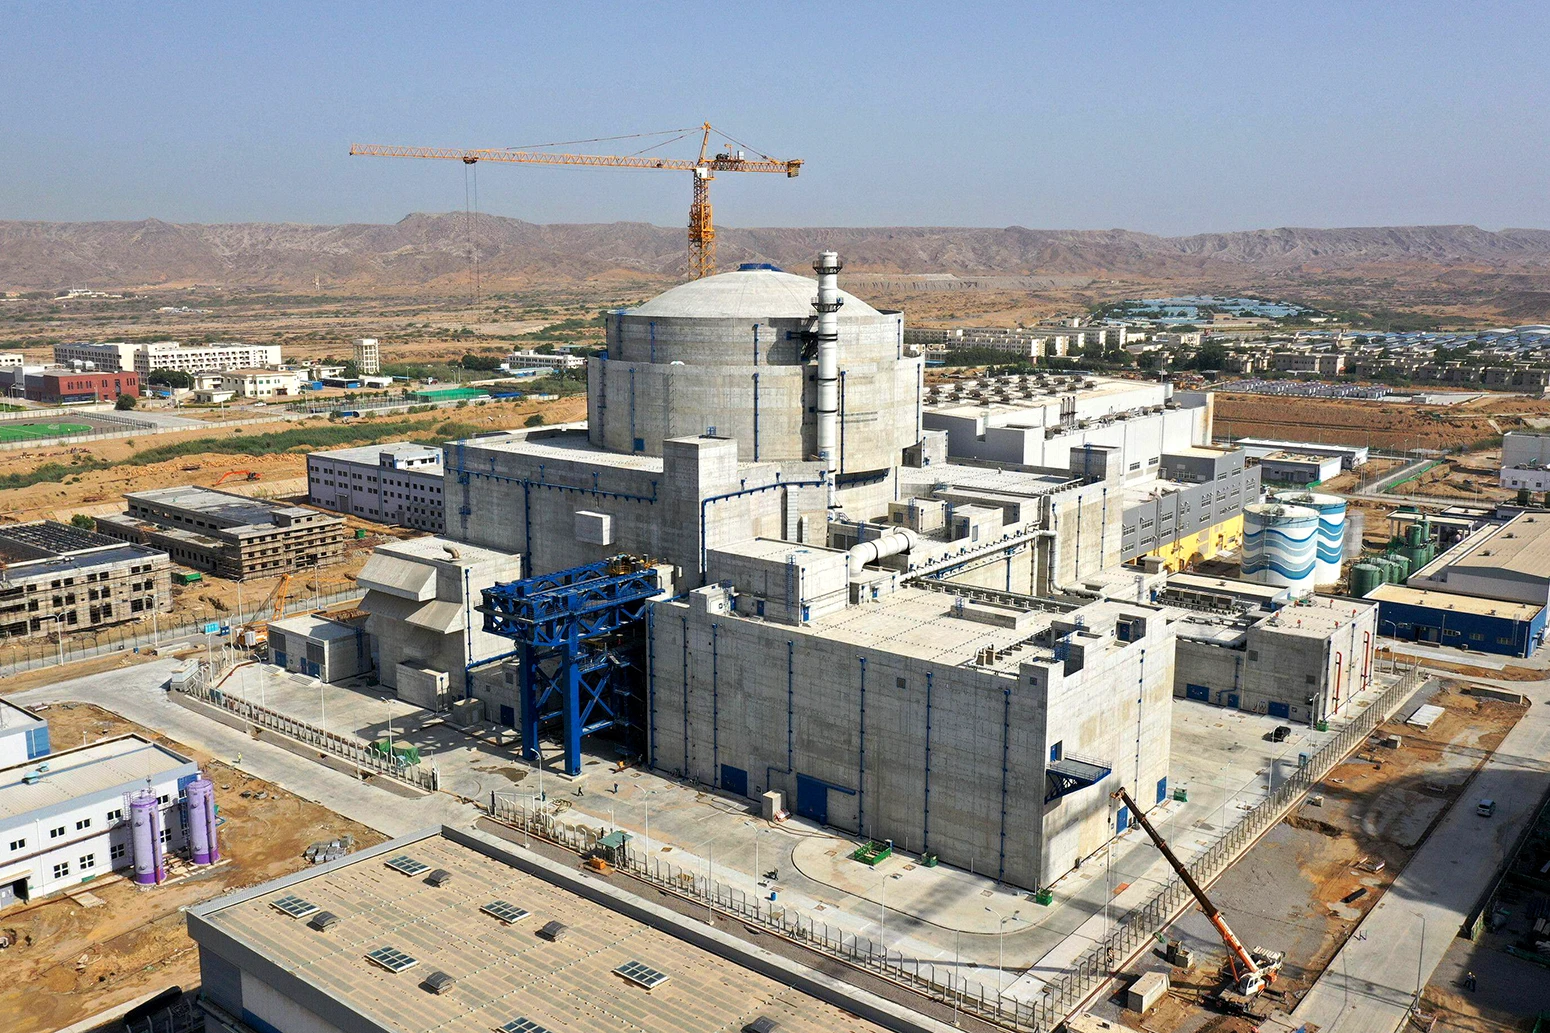 Nhà máy điện hạt nhân Karachi Tổ máy-2 (K-2), Karachi, Pakistan.